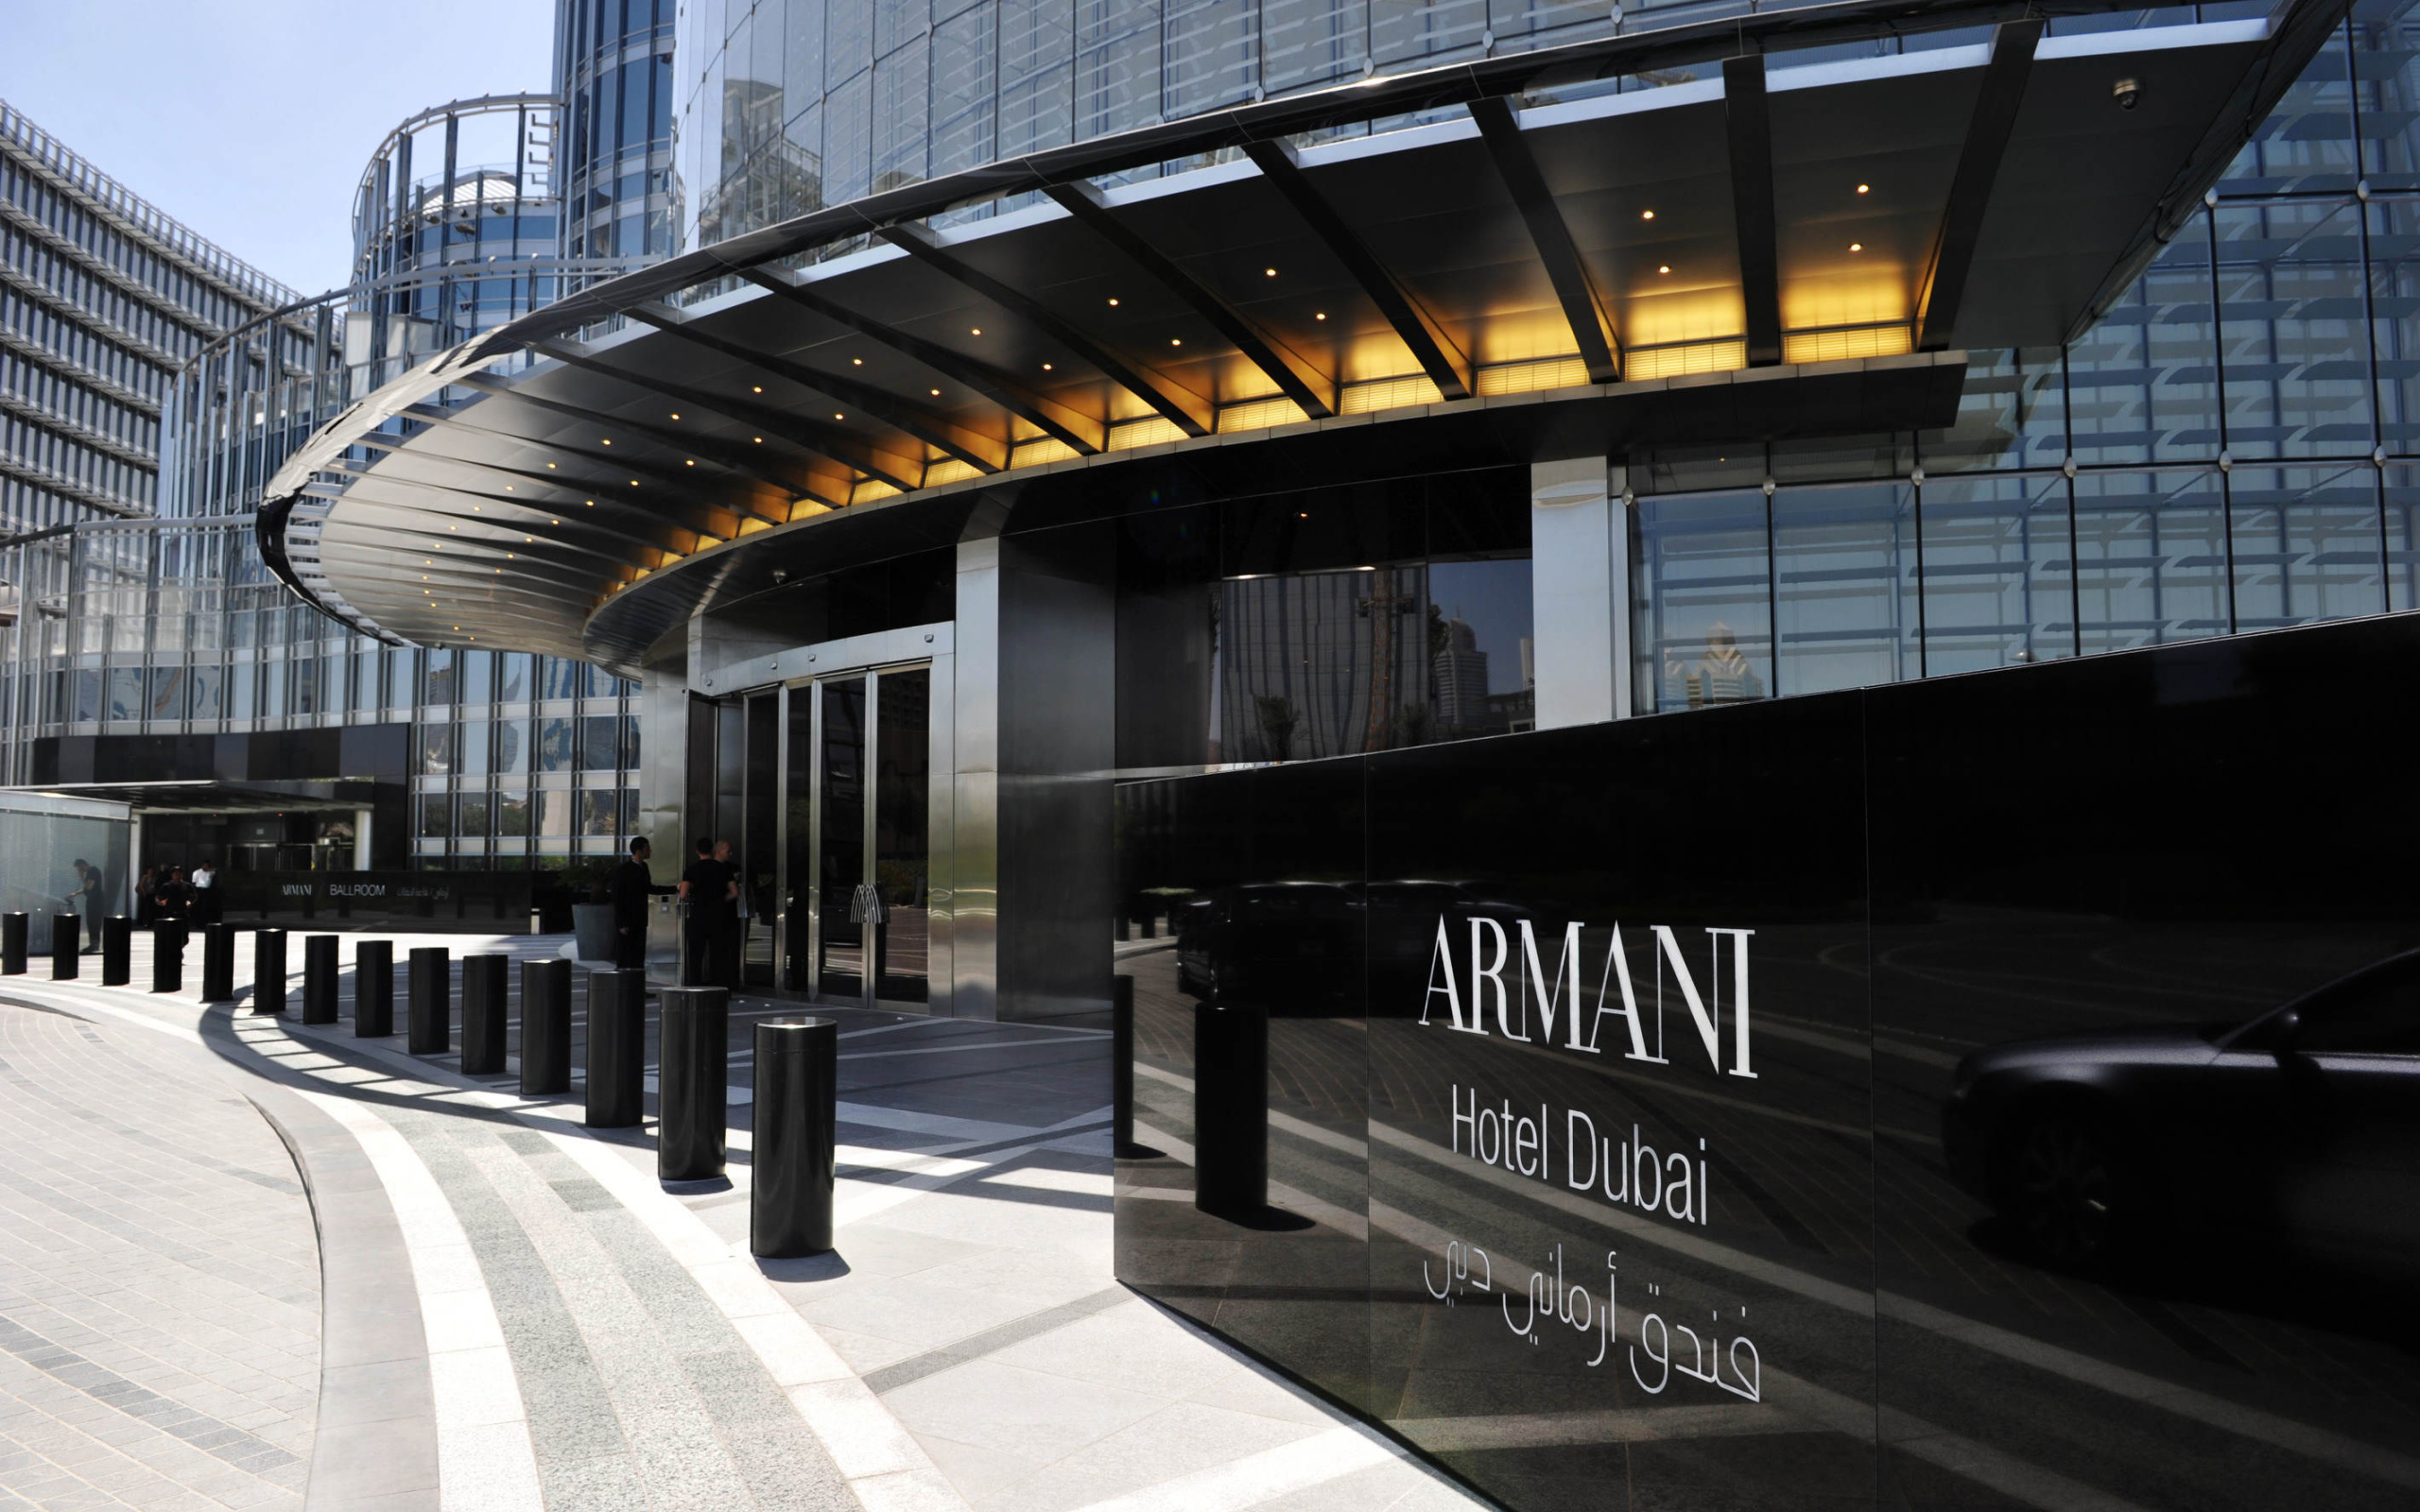 Отель в бурдж халифа дубай. Отель Армани в Бурдж Халифа. Апартаменты Армани в Бурдж Халифа. Армани Хотелс Дубай. Armani Hotel Dubai.